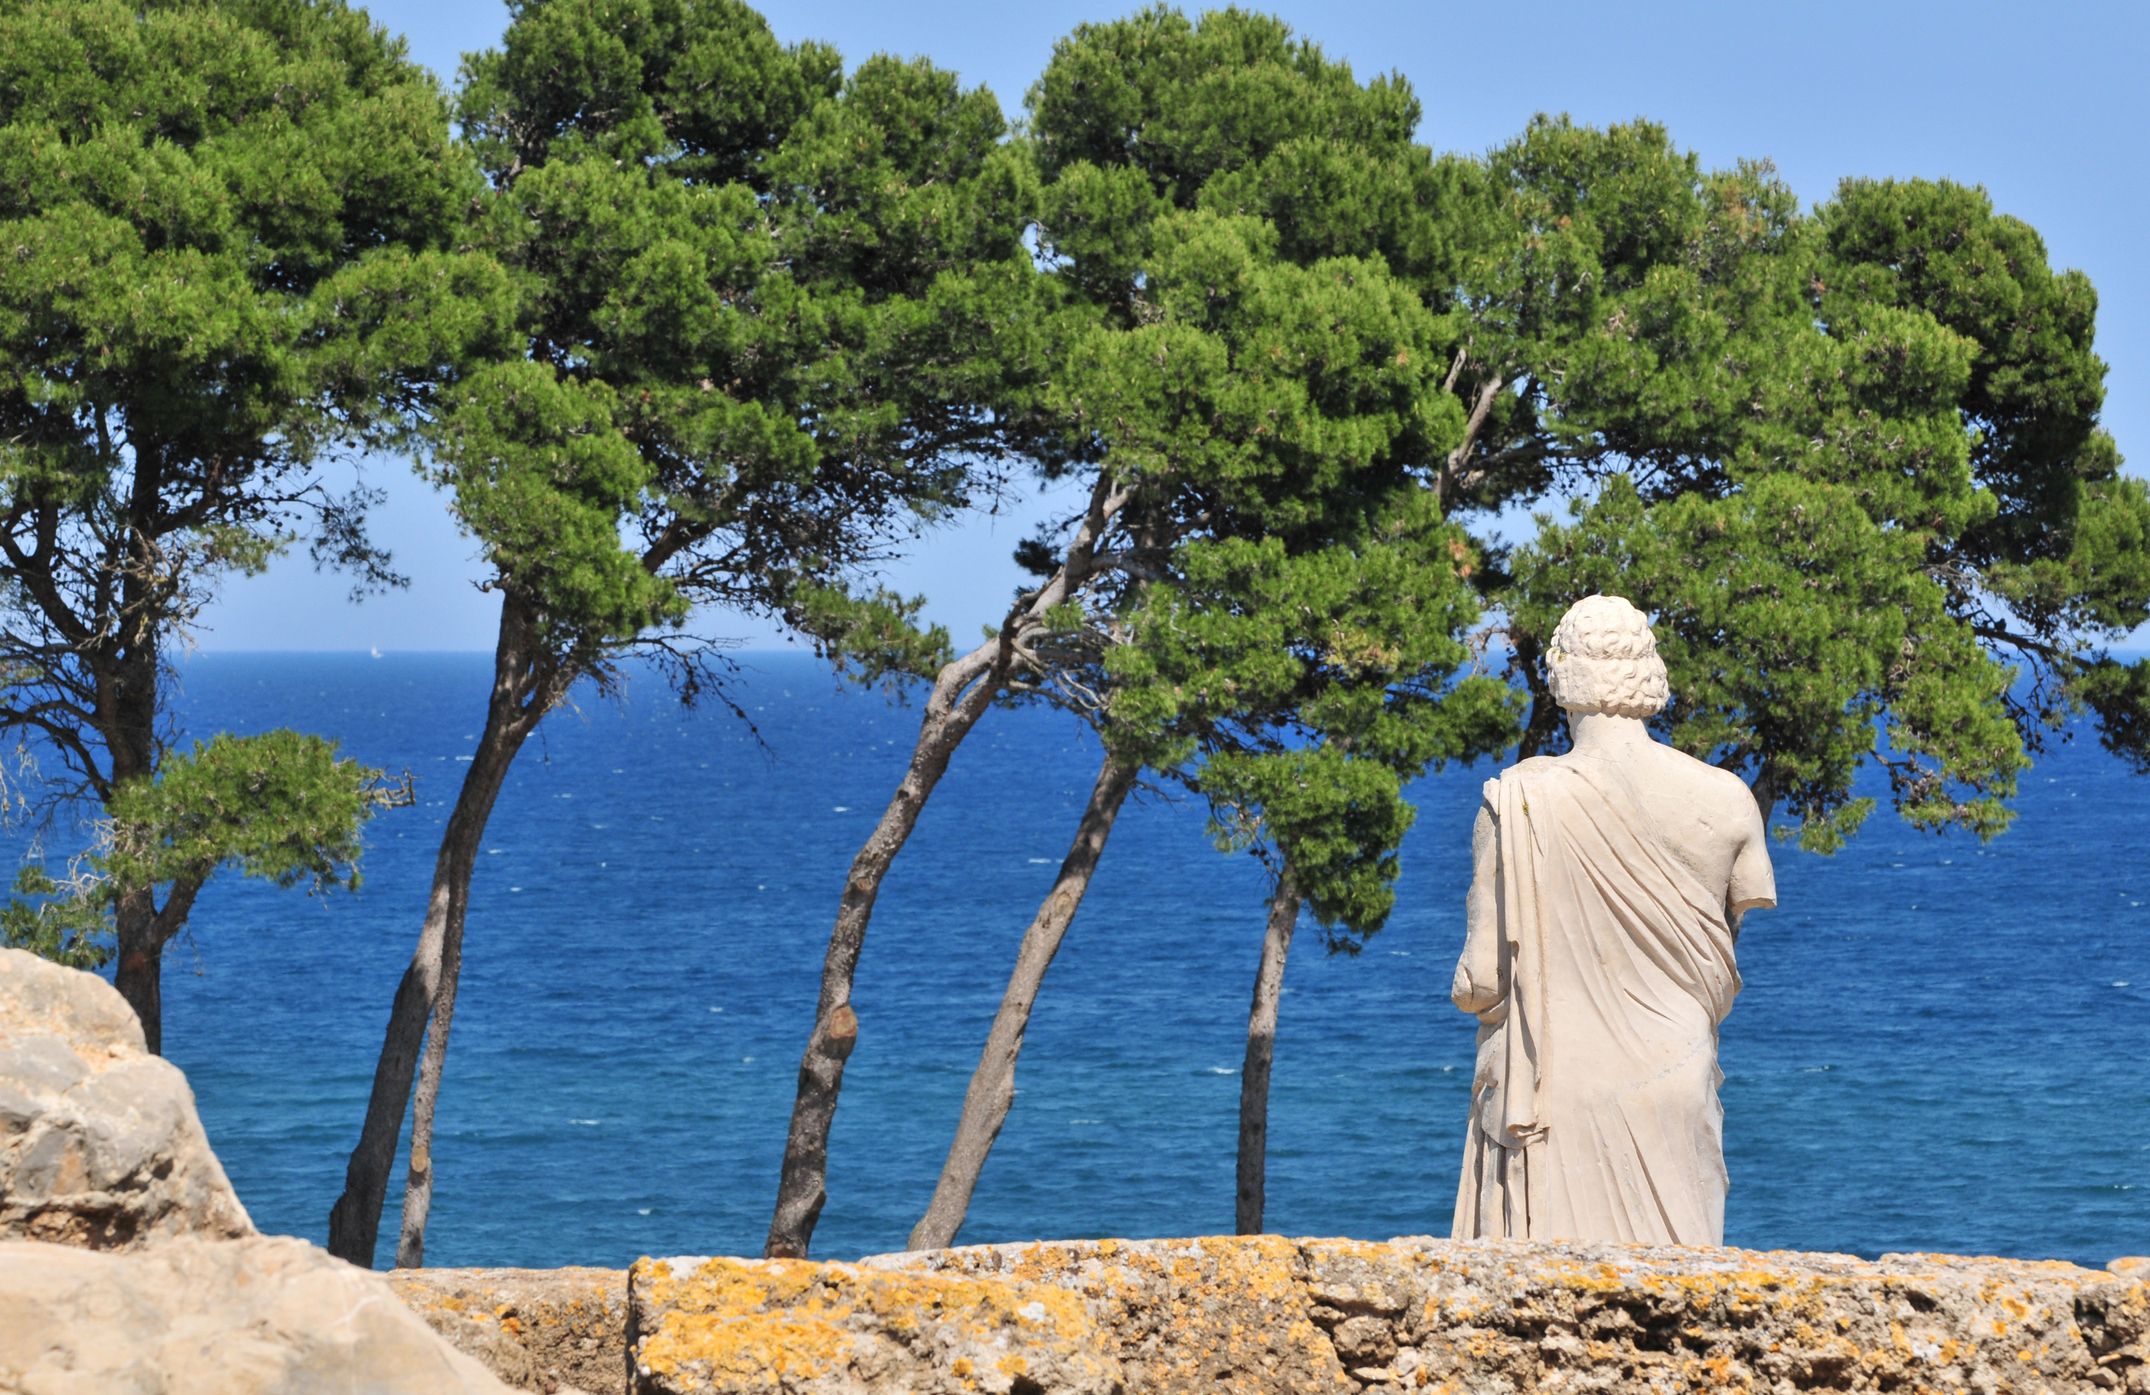 Aquesta estàtua que mira el mar és la troballa més important d'Empúries. Representa Asclepi, el déu grec de la medicina. Els malalts li resaven per guarir-se